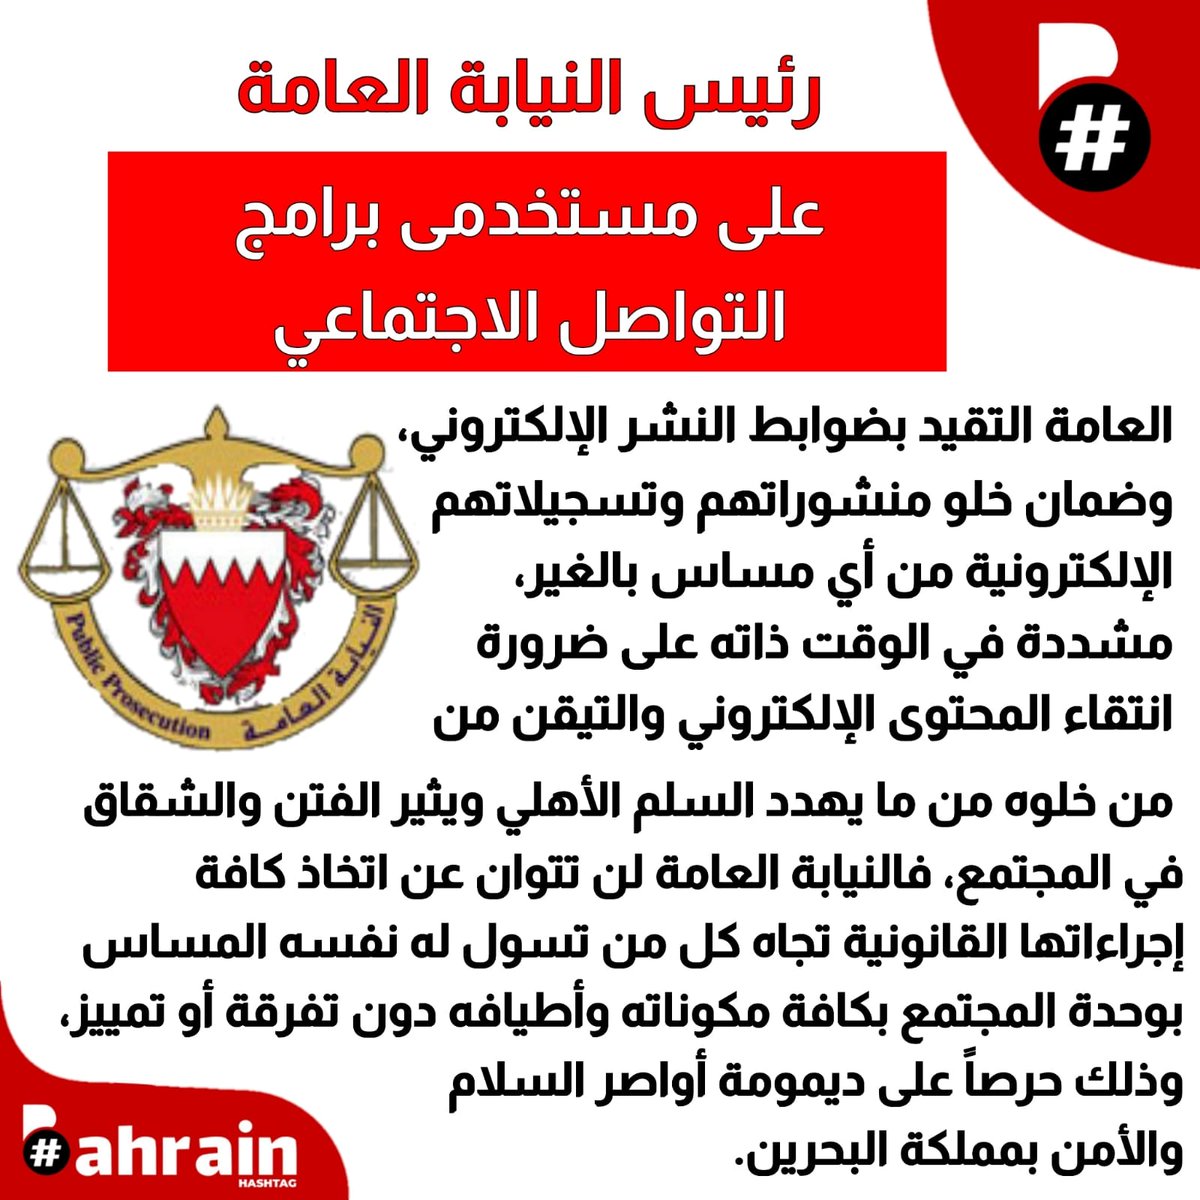 إلى النيابة العامة: لا أدري هل الصمت على ما يطرحه هذا الشخص يصون السلم الأهلي؟ نسأل!
قذف وسب واضحان... في انتظار اتخاذ الإجراءات القانونية التي تُشعر المواطنين أنهم متساوون أمام القانون وألّا أحد فوق القانون.
@moi_bahrain 
@bppbahrain